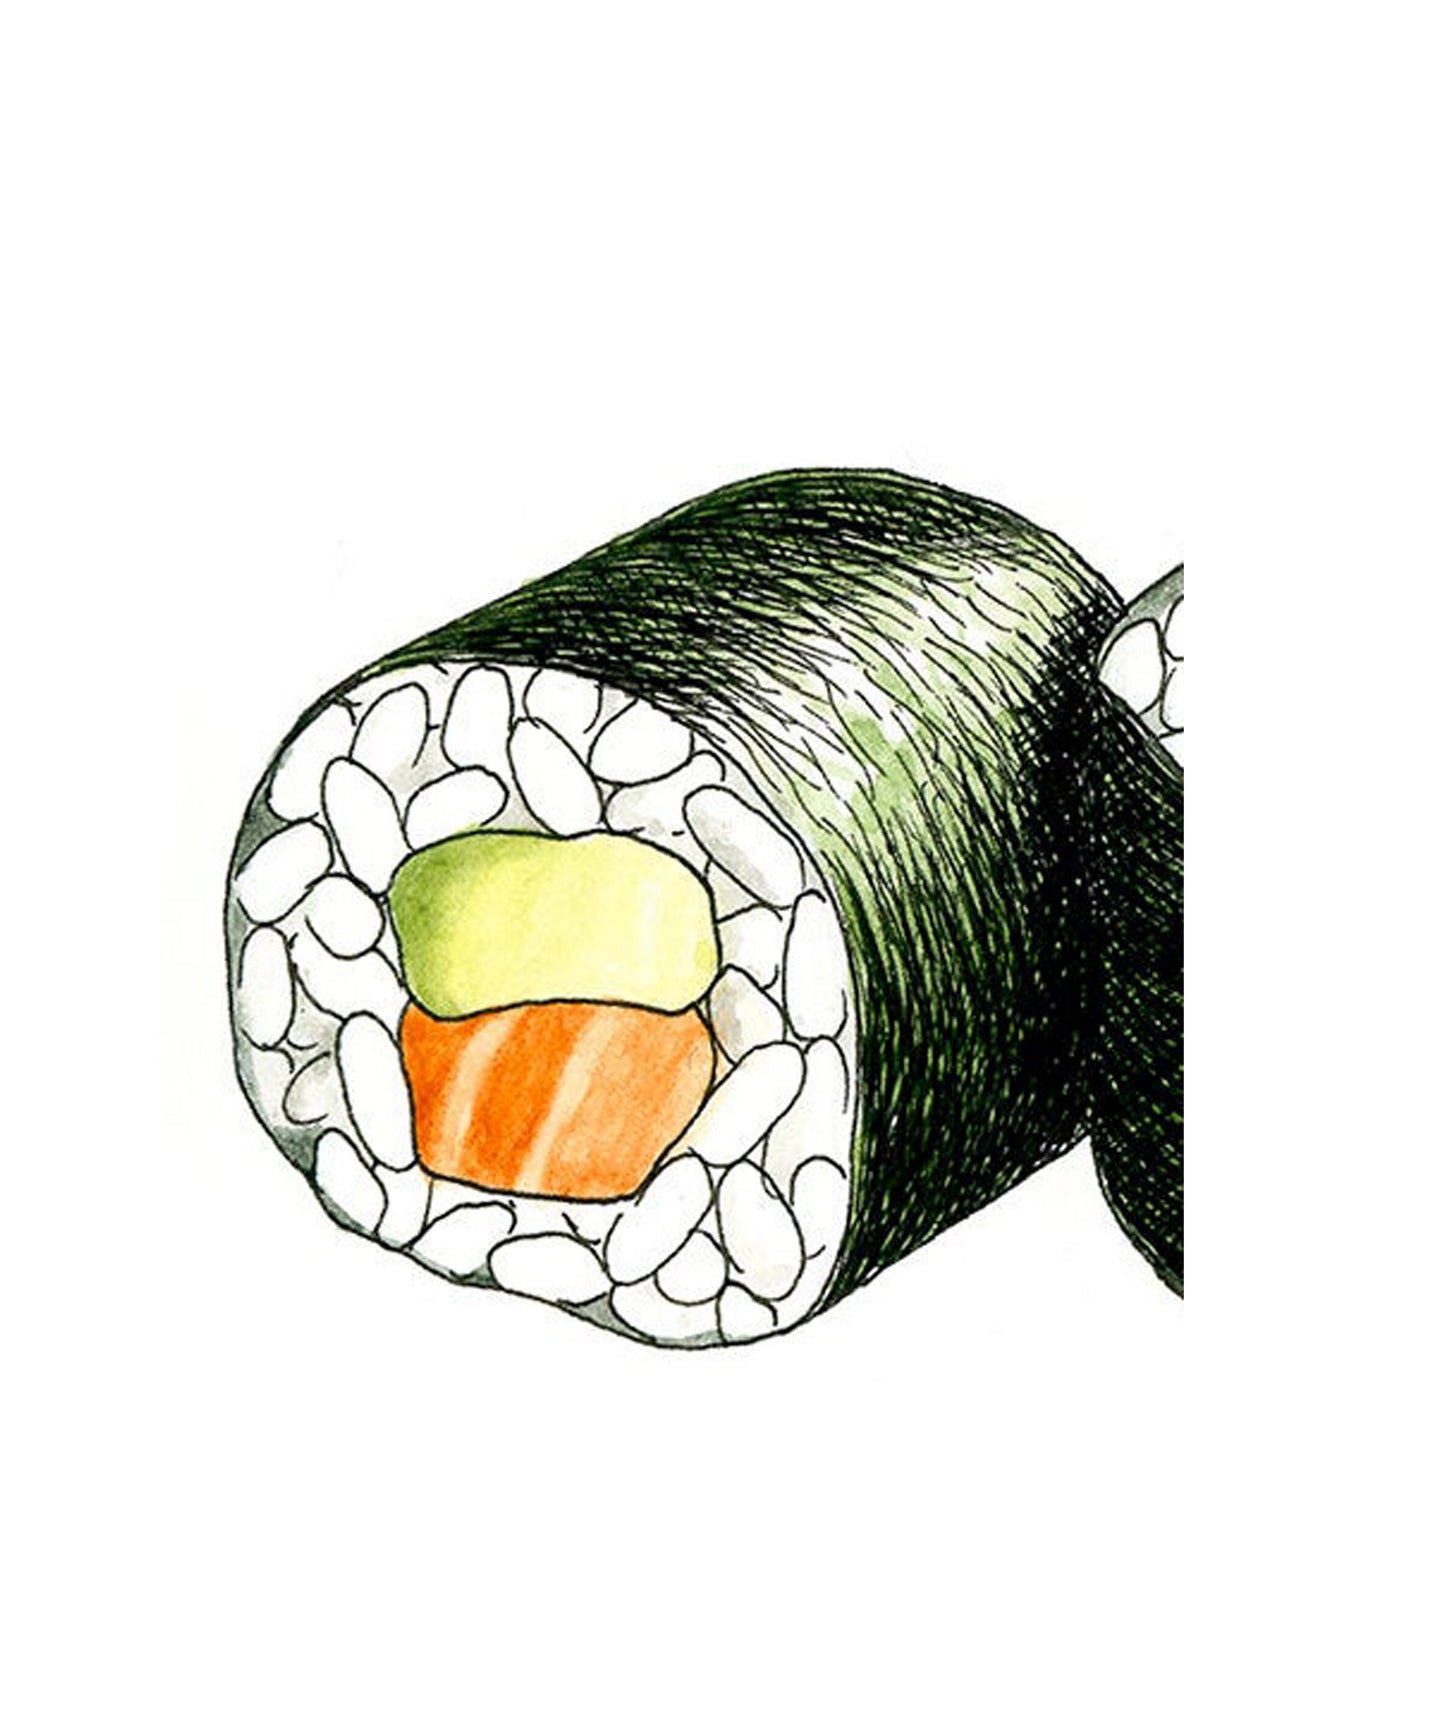 Sushi Gicleé Print